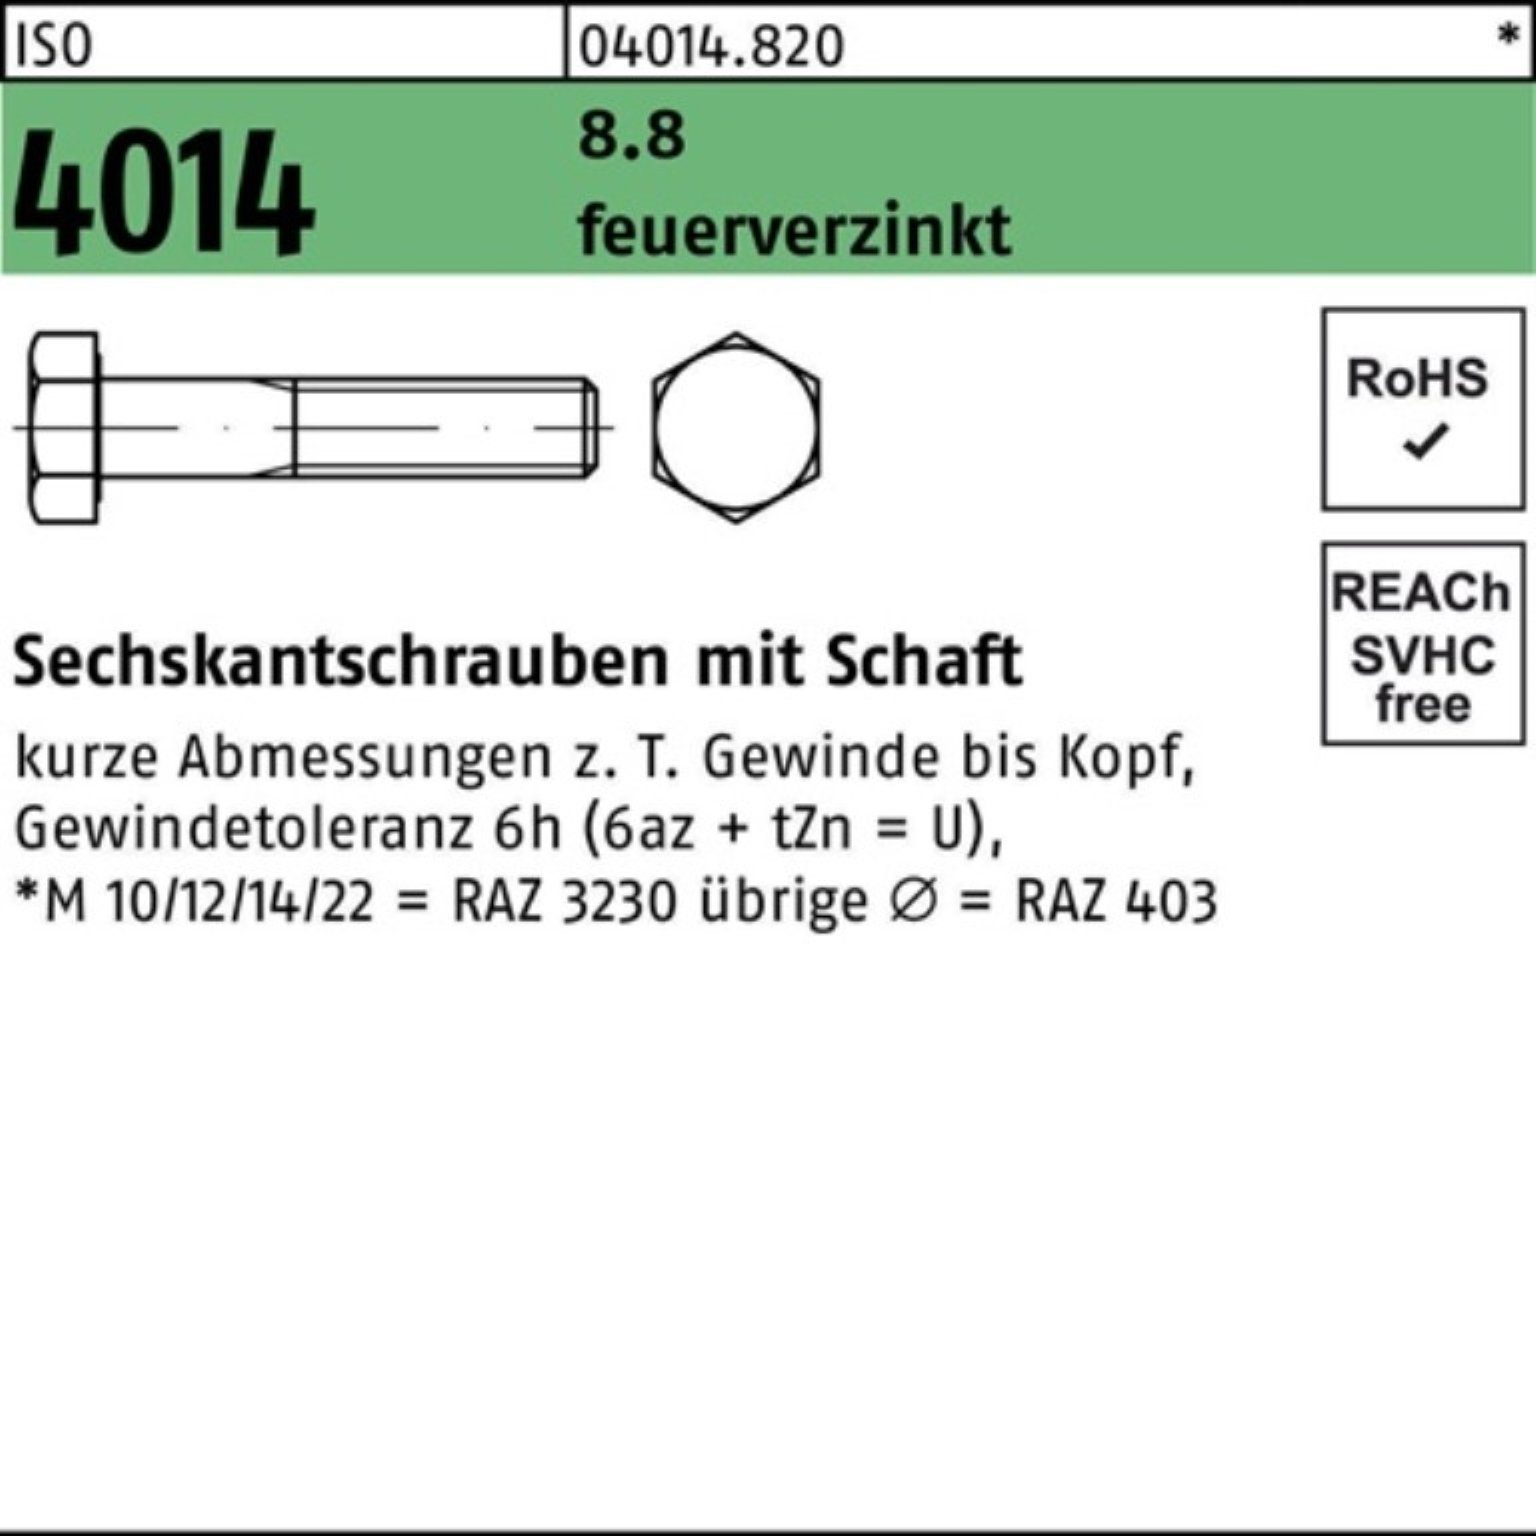 Bufab Sechskantschraube ISO 8.8 M24x Sechskantschraube 110 feuerverz. Schaft 100er 4014 Pack 1